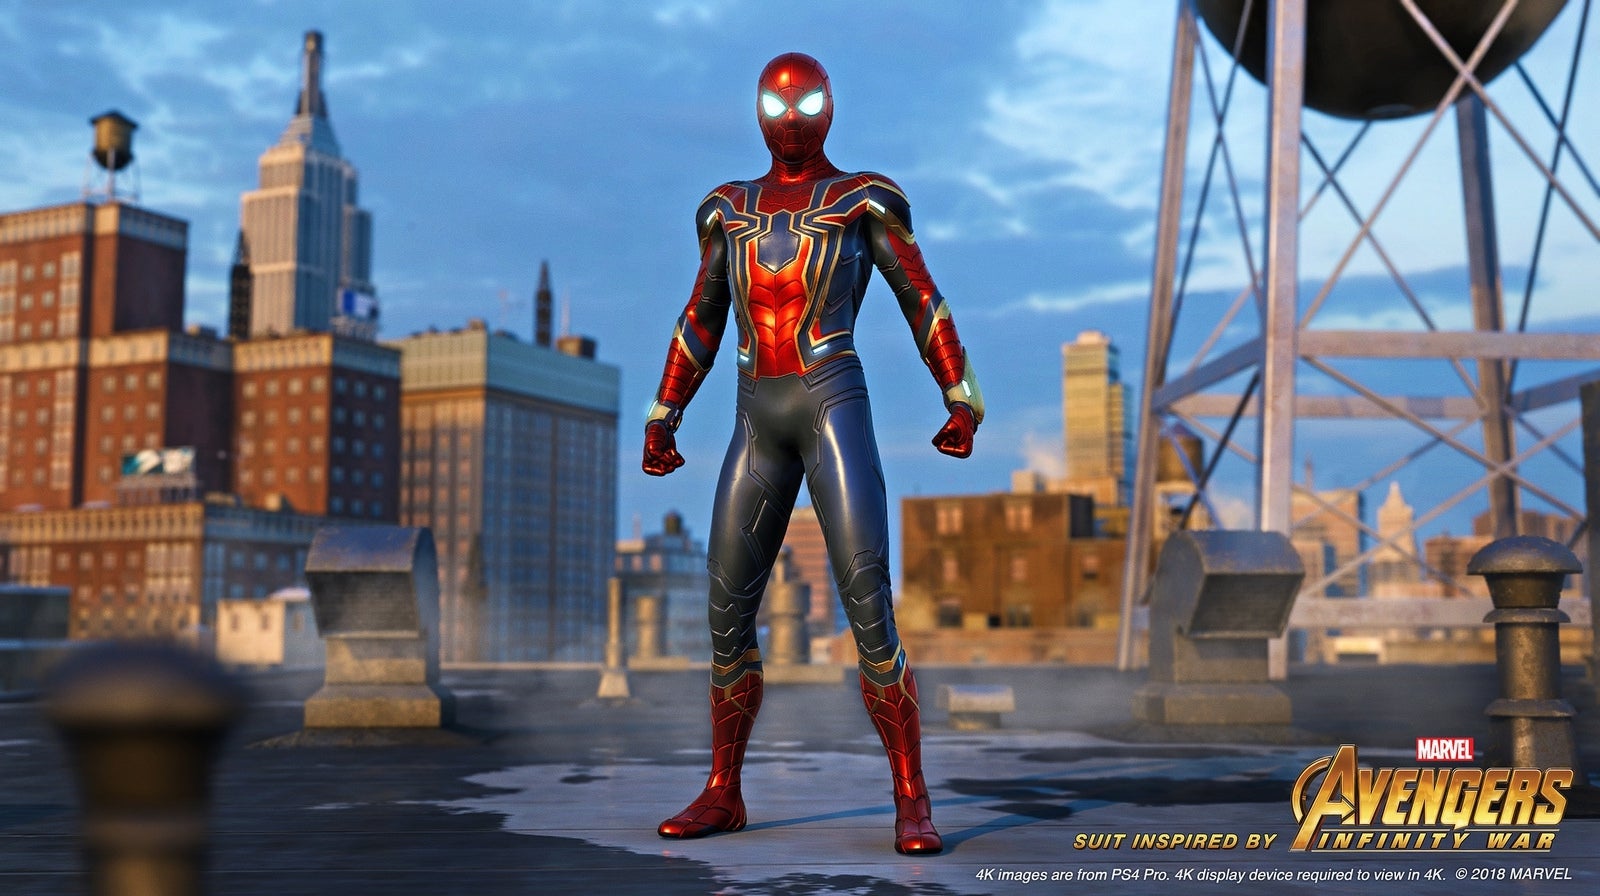 Hidden Abilities Of The Spider-Man Suit